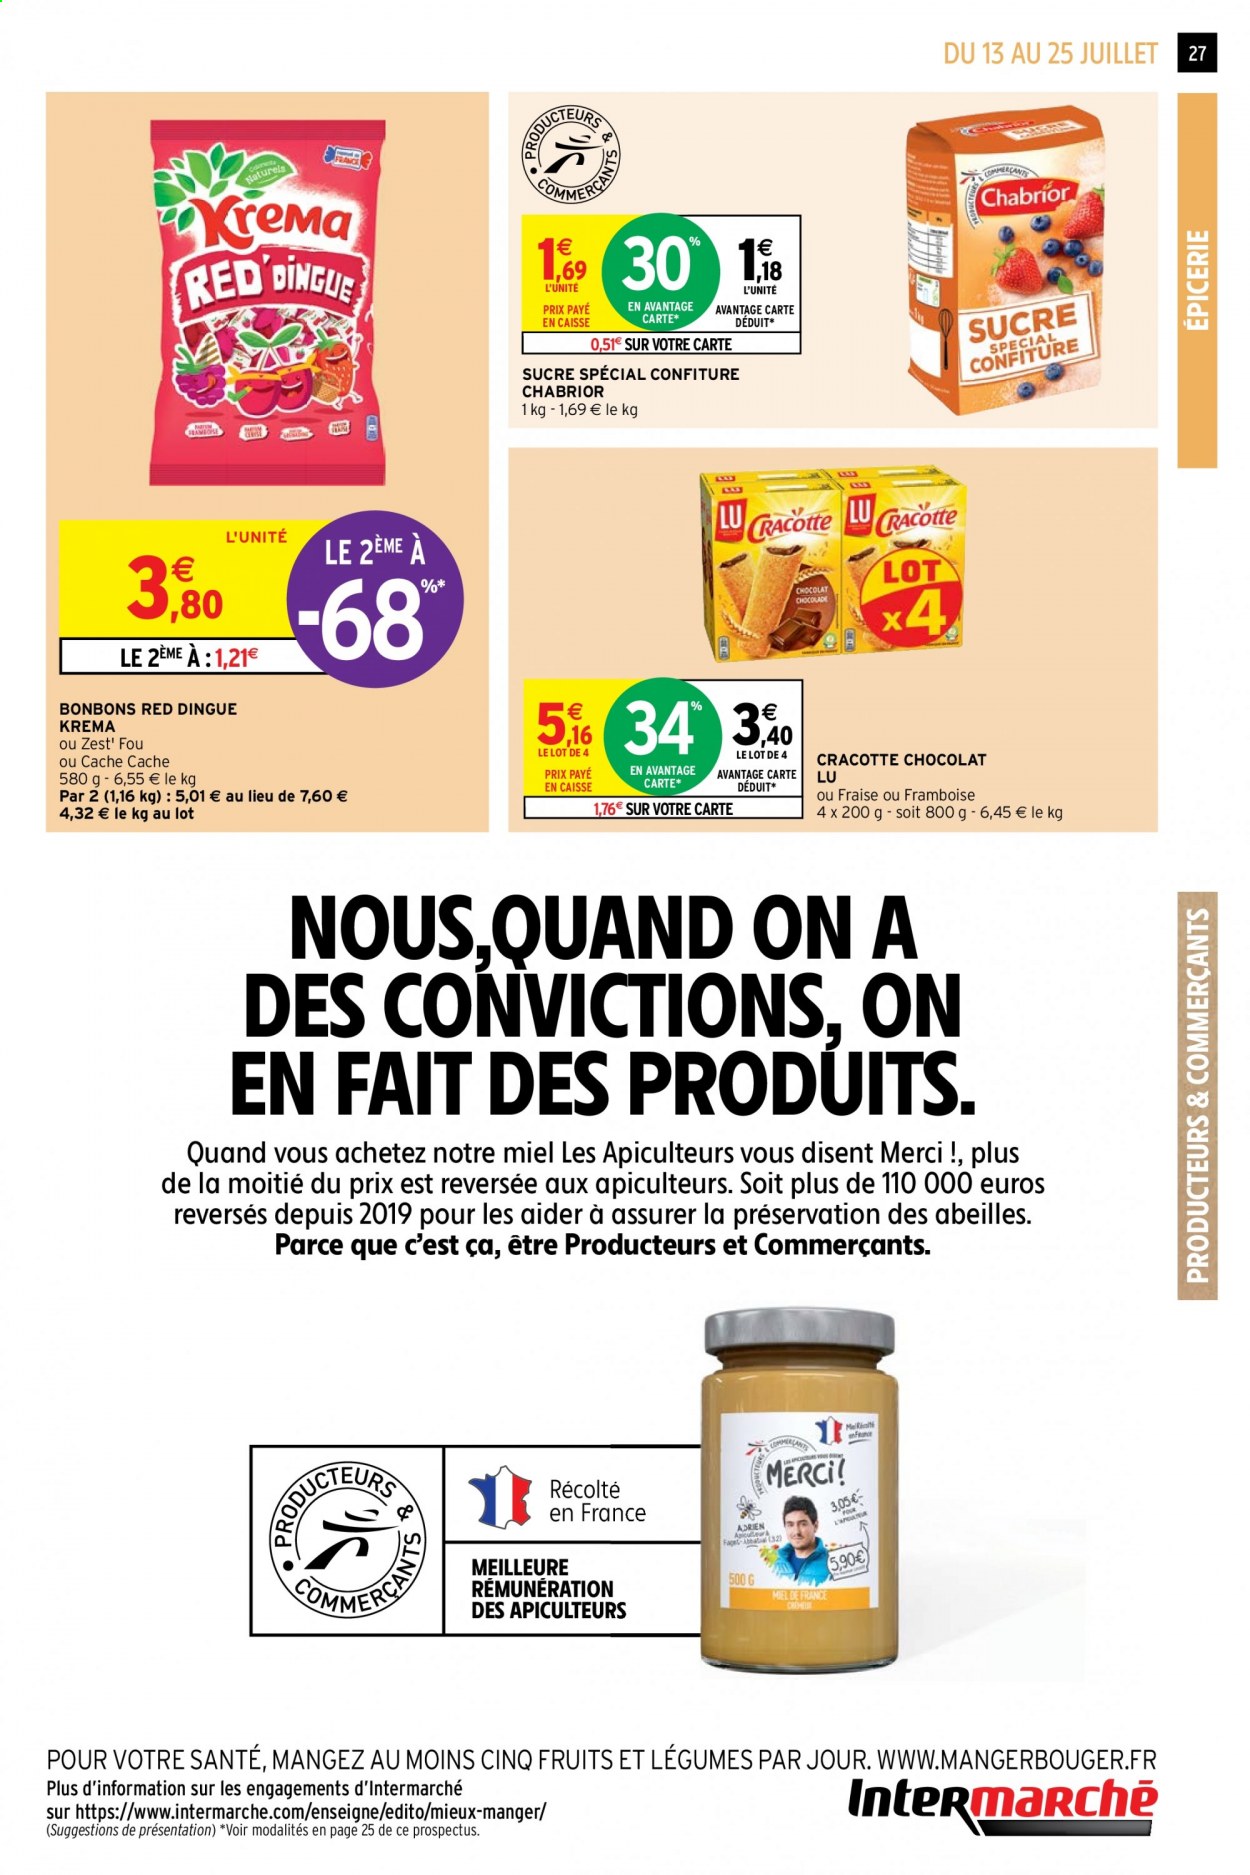 thumbnail - Catalogue Intermarché Contact - 13/07/2021 - 25/07/2021 - Produits soldés - bière, Zest, bonbons, LU, sucre, confiture, miel. Page 27.